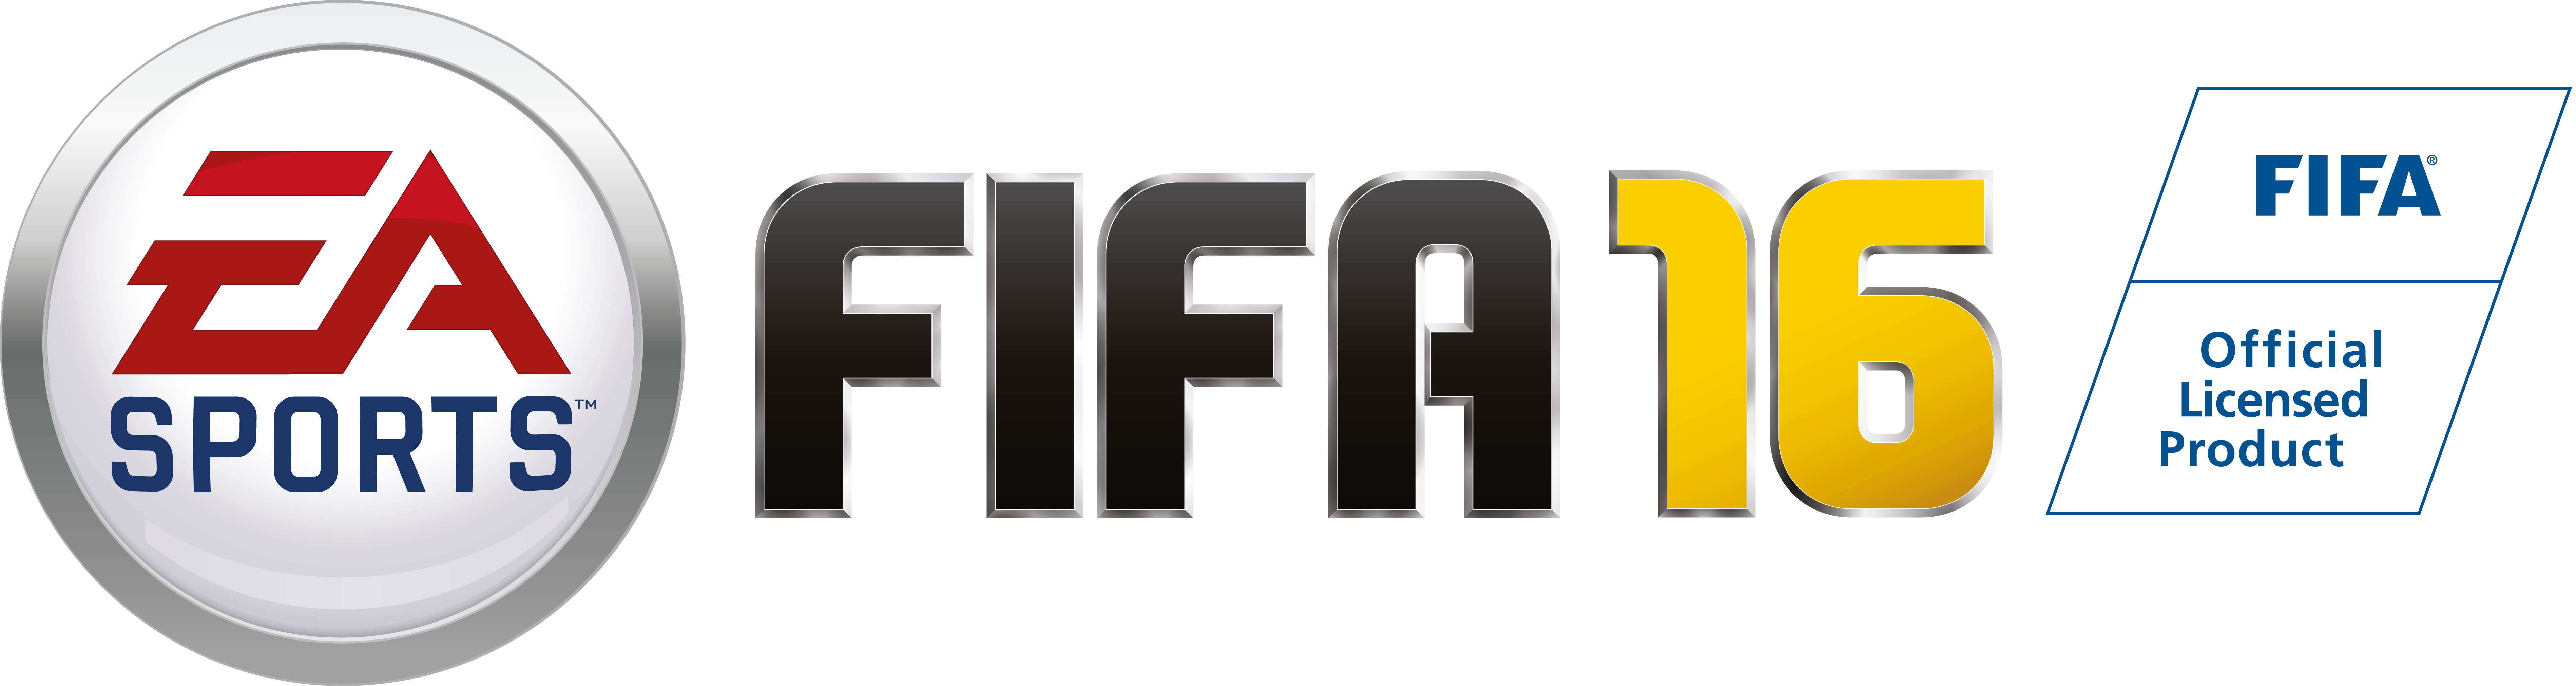 fifa-16-logo.png